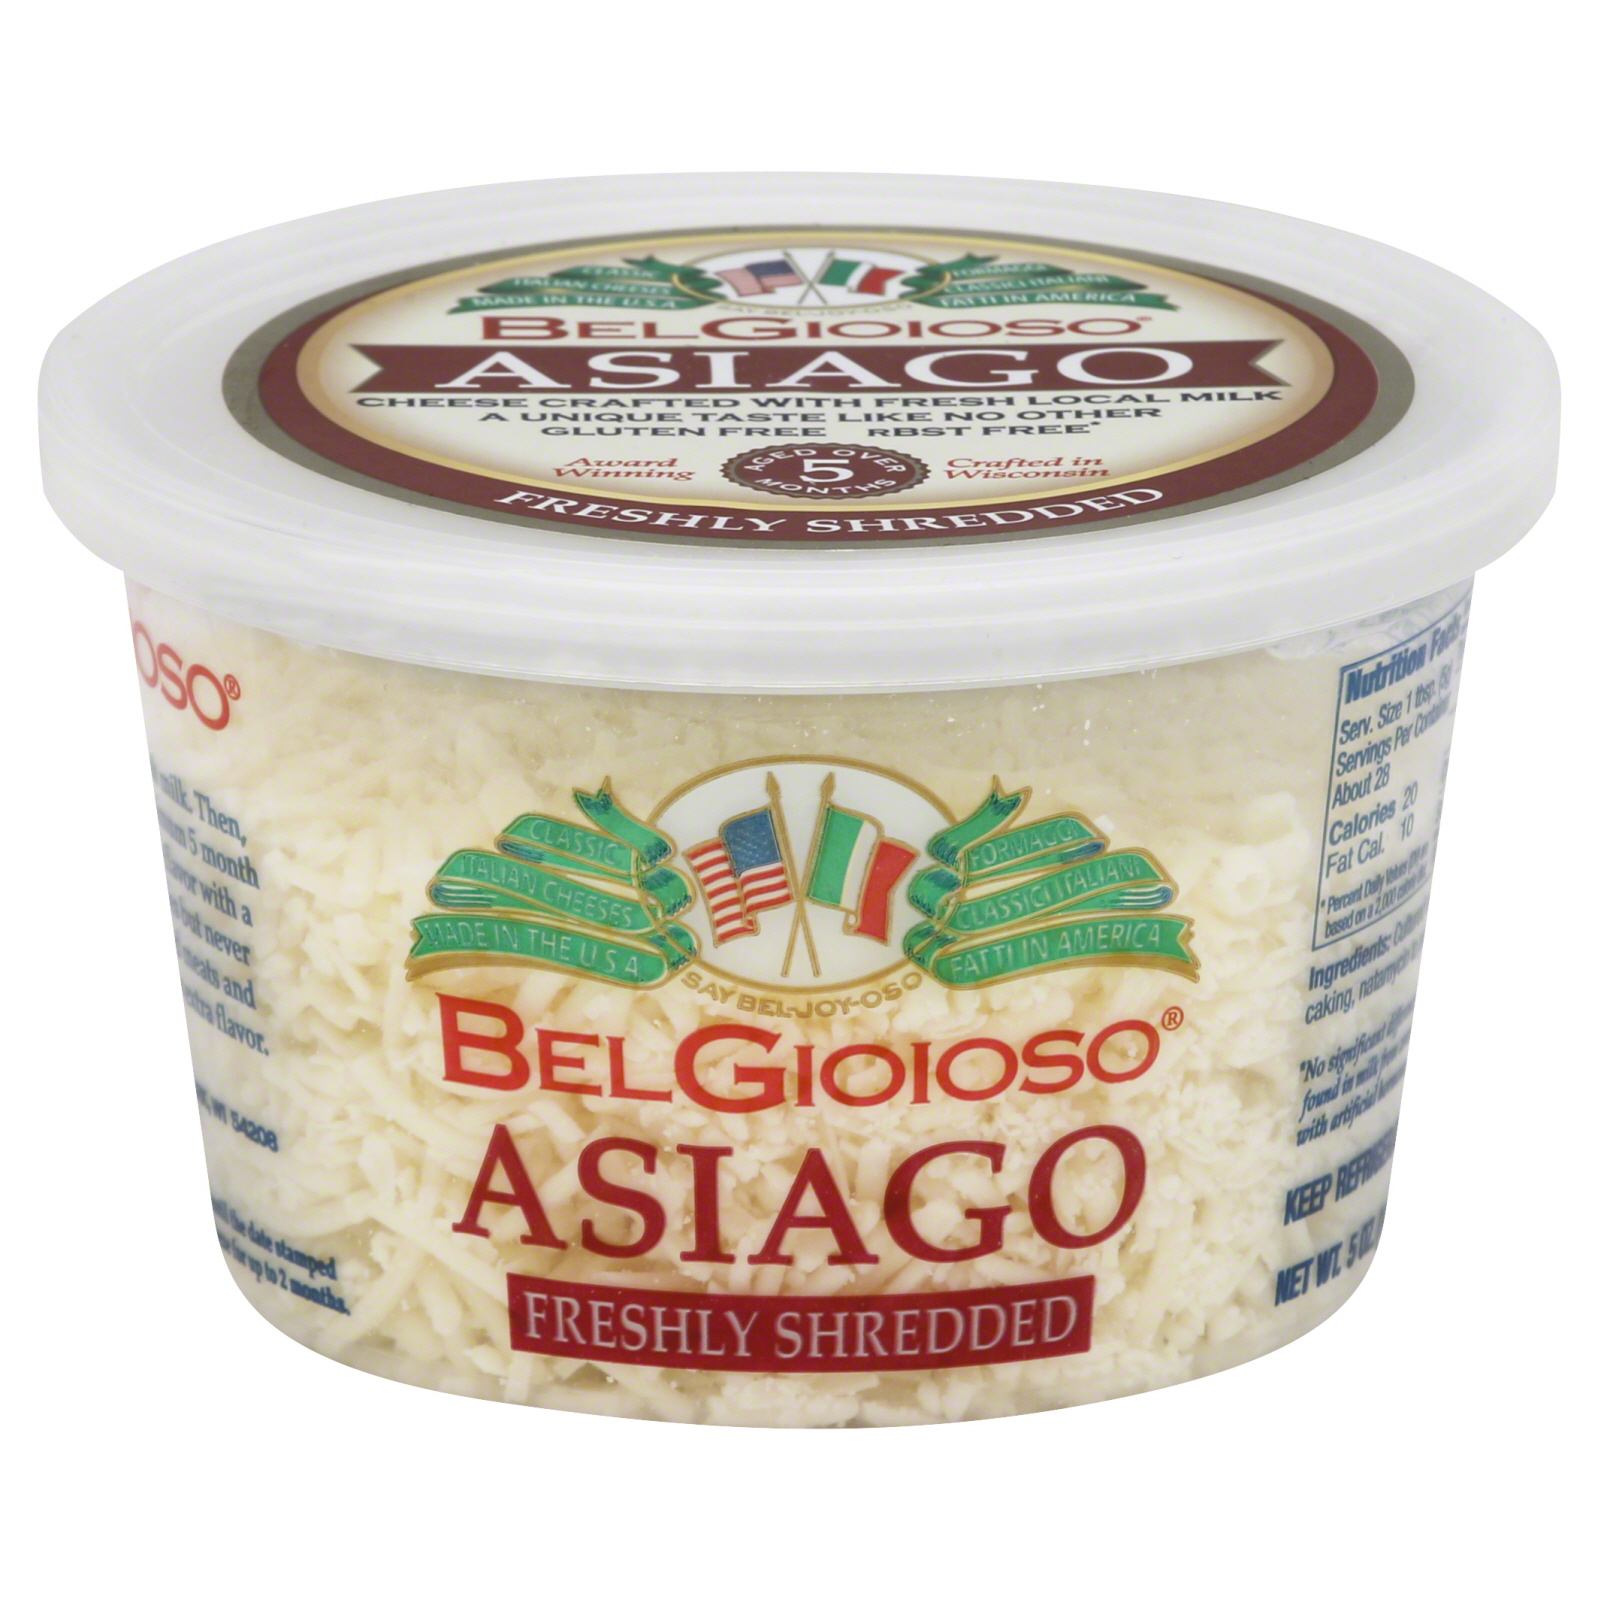 Asiago Freshly Shredded Cheese, Asiago - asiago